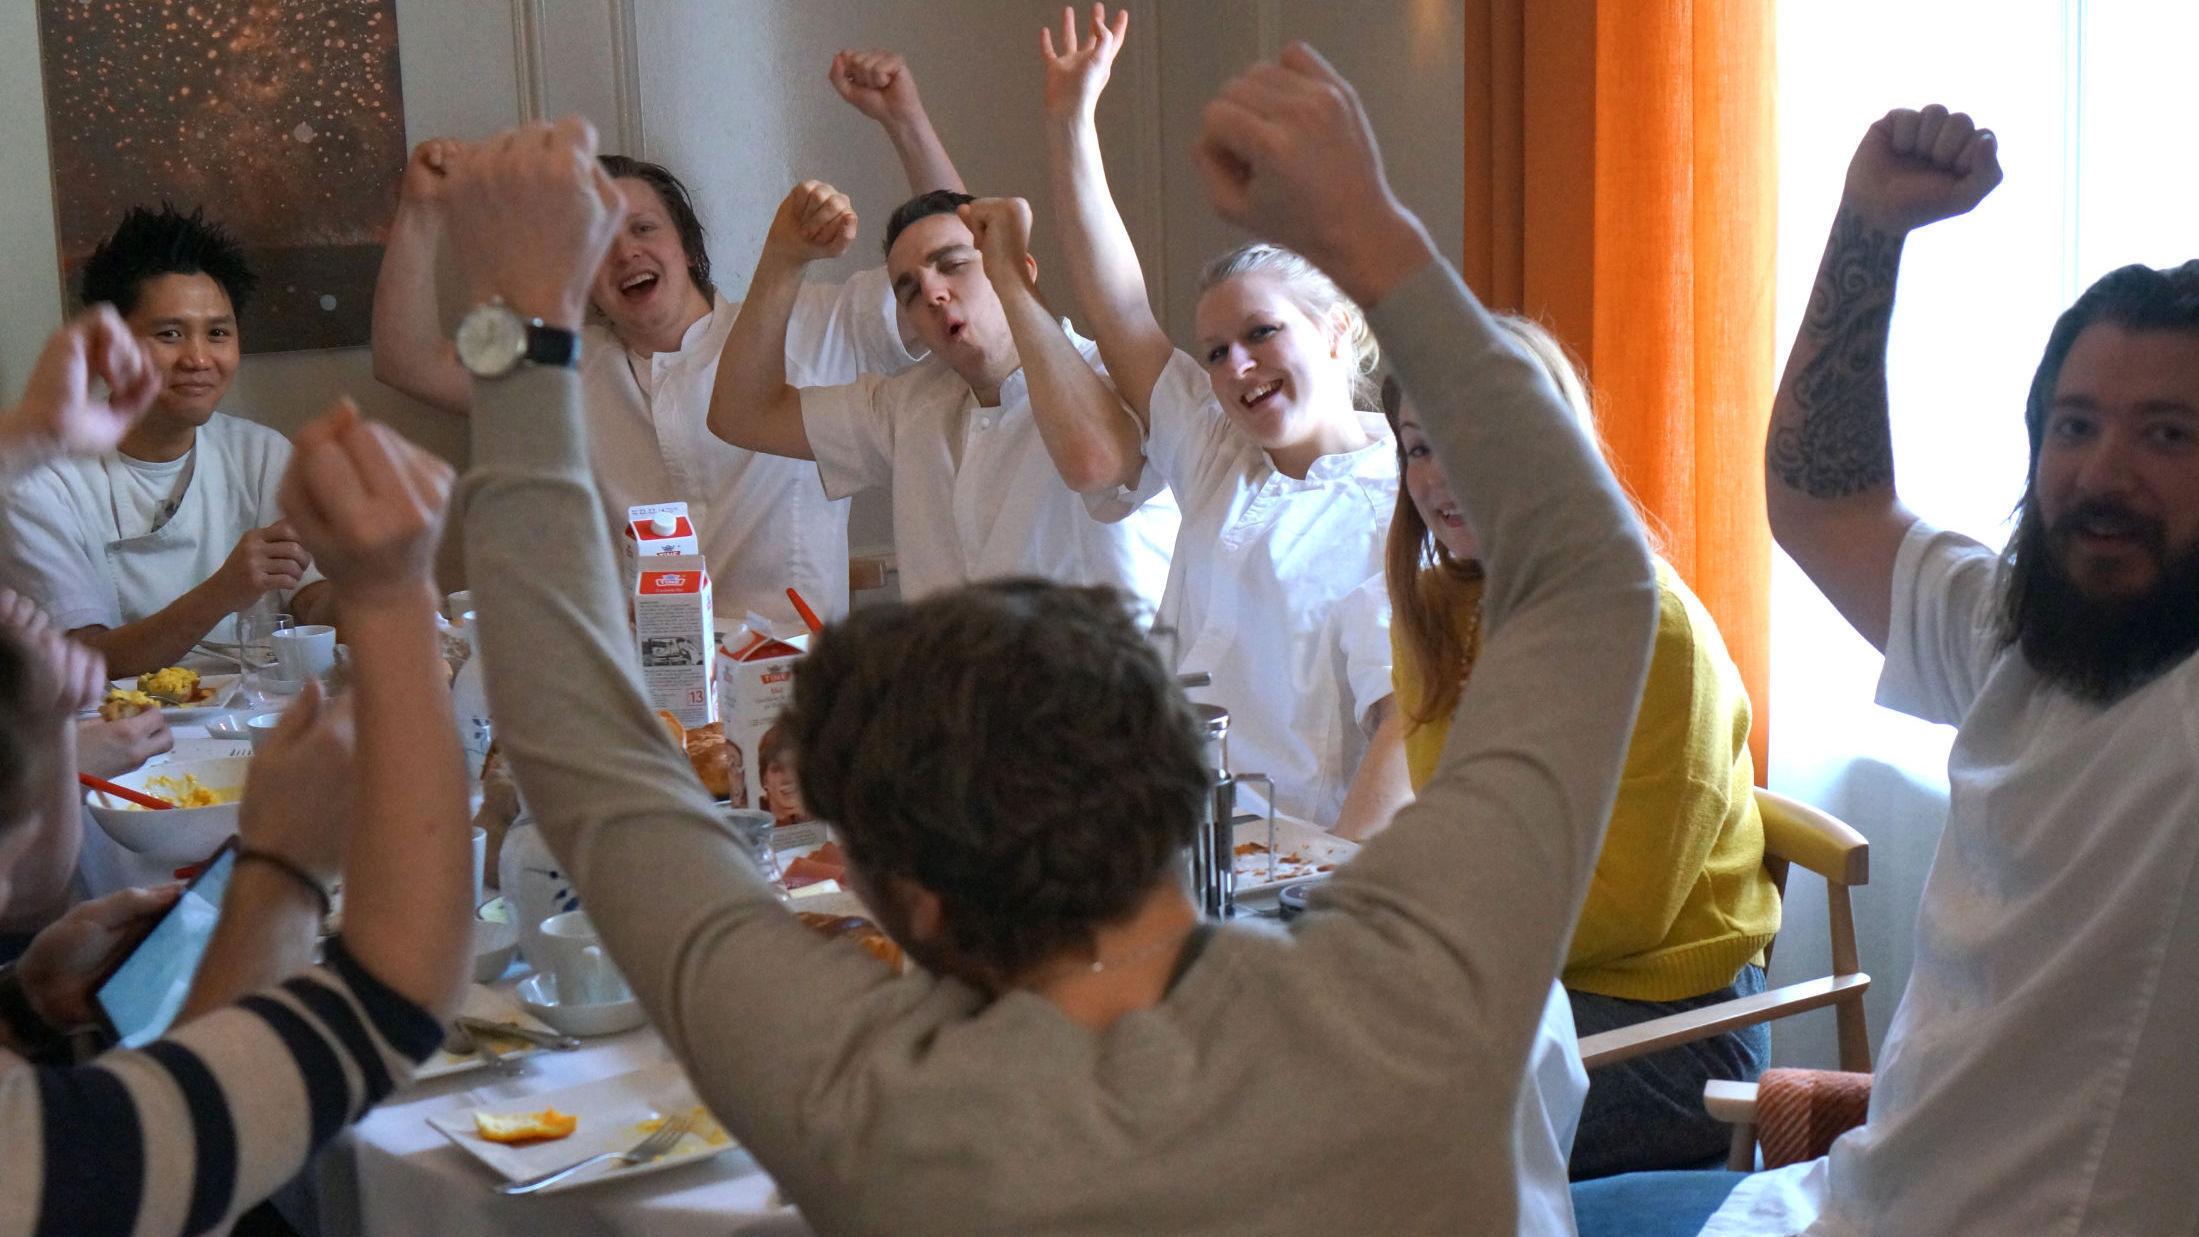 FROKOSTFEIRING: Even Ramsvik og resten av de ansatte på Ylajali feiret Michelin-stjernen med en felles frokost og jubel. Foto: Maria Tveiten Helgeby